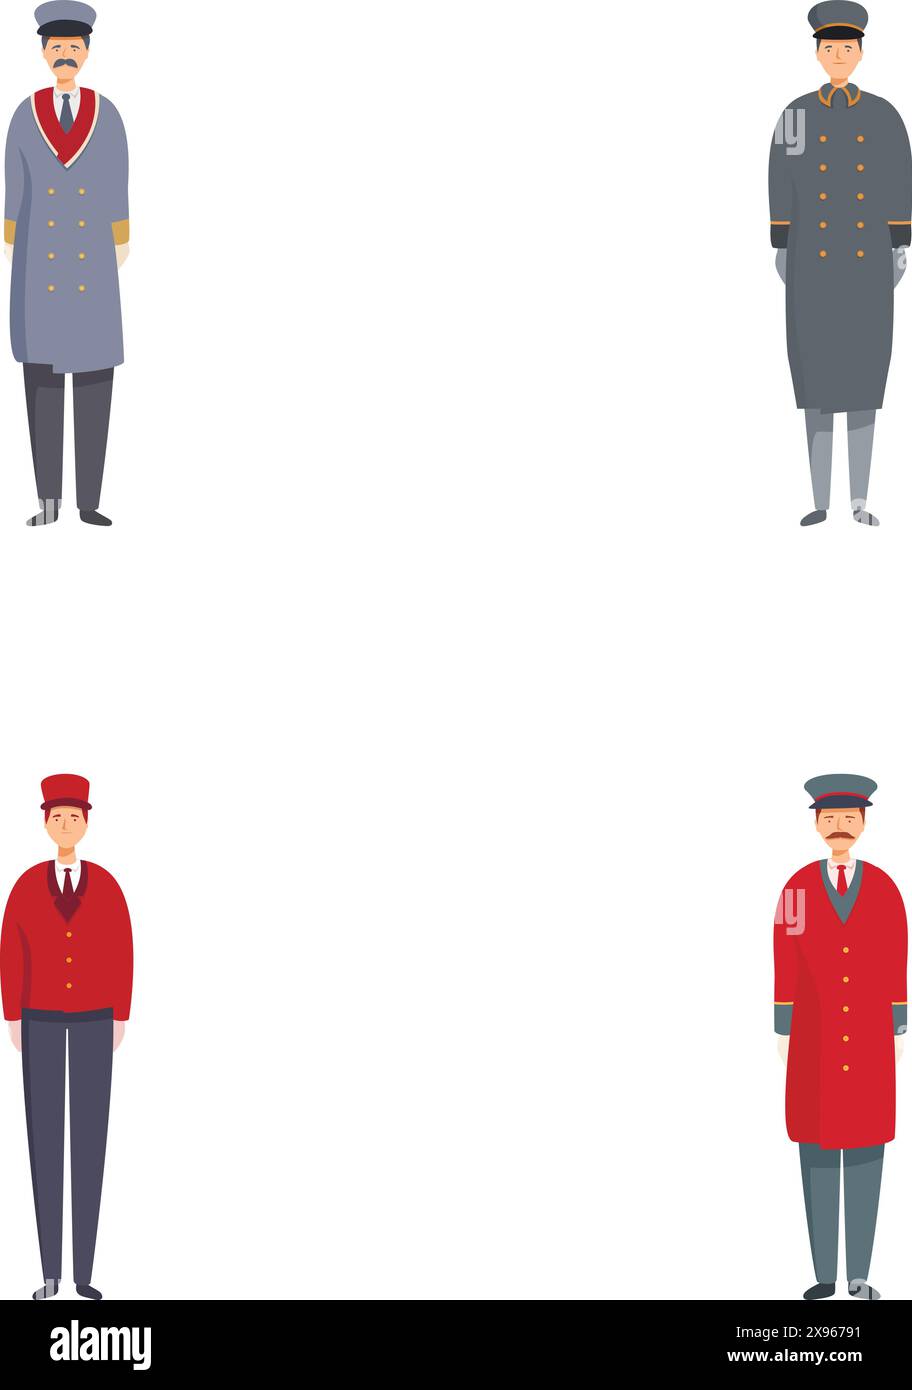 Ensemble illustré de quatre conducteurs de train dans des uniformes et des poses différents, isolés sur blanc Illustration de Vecteur